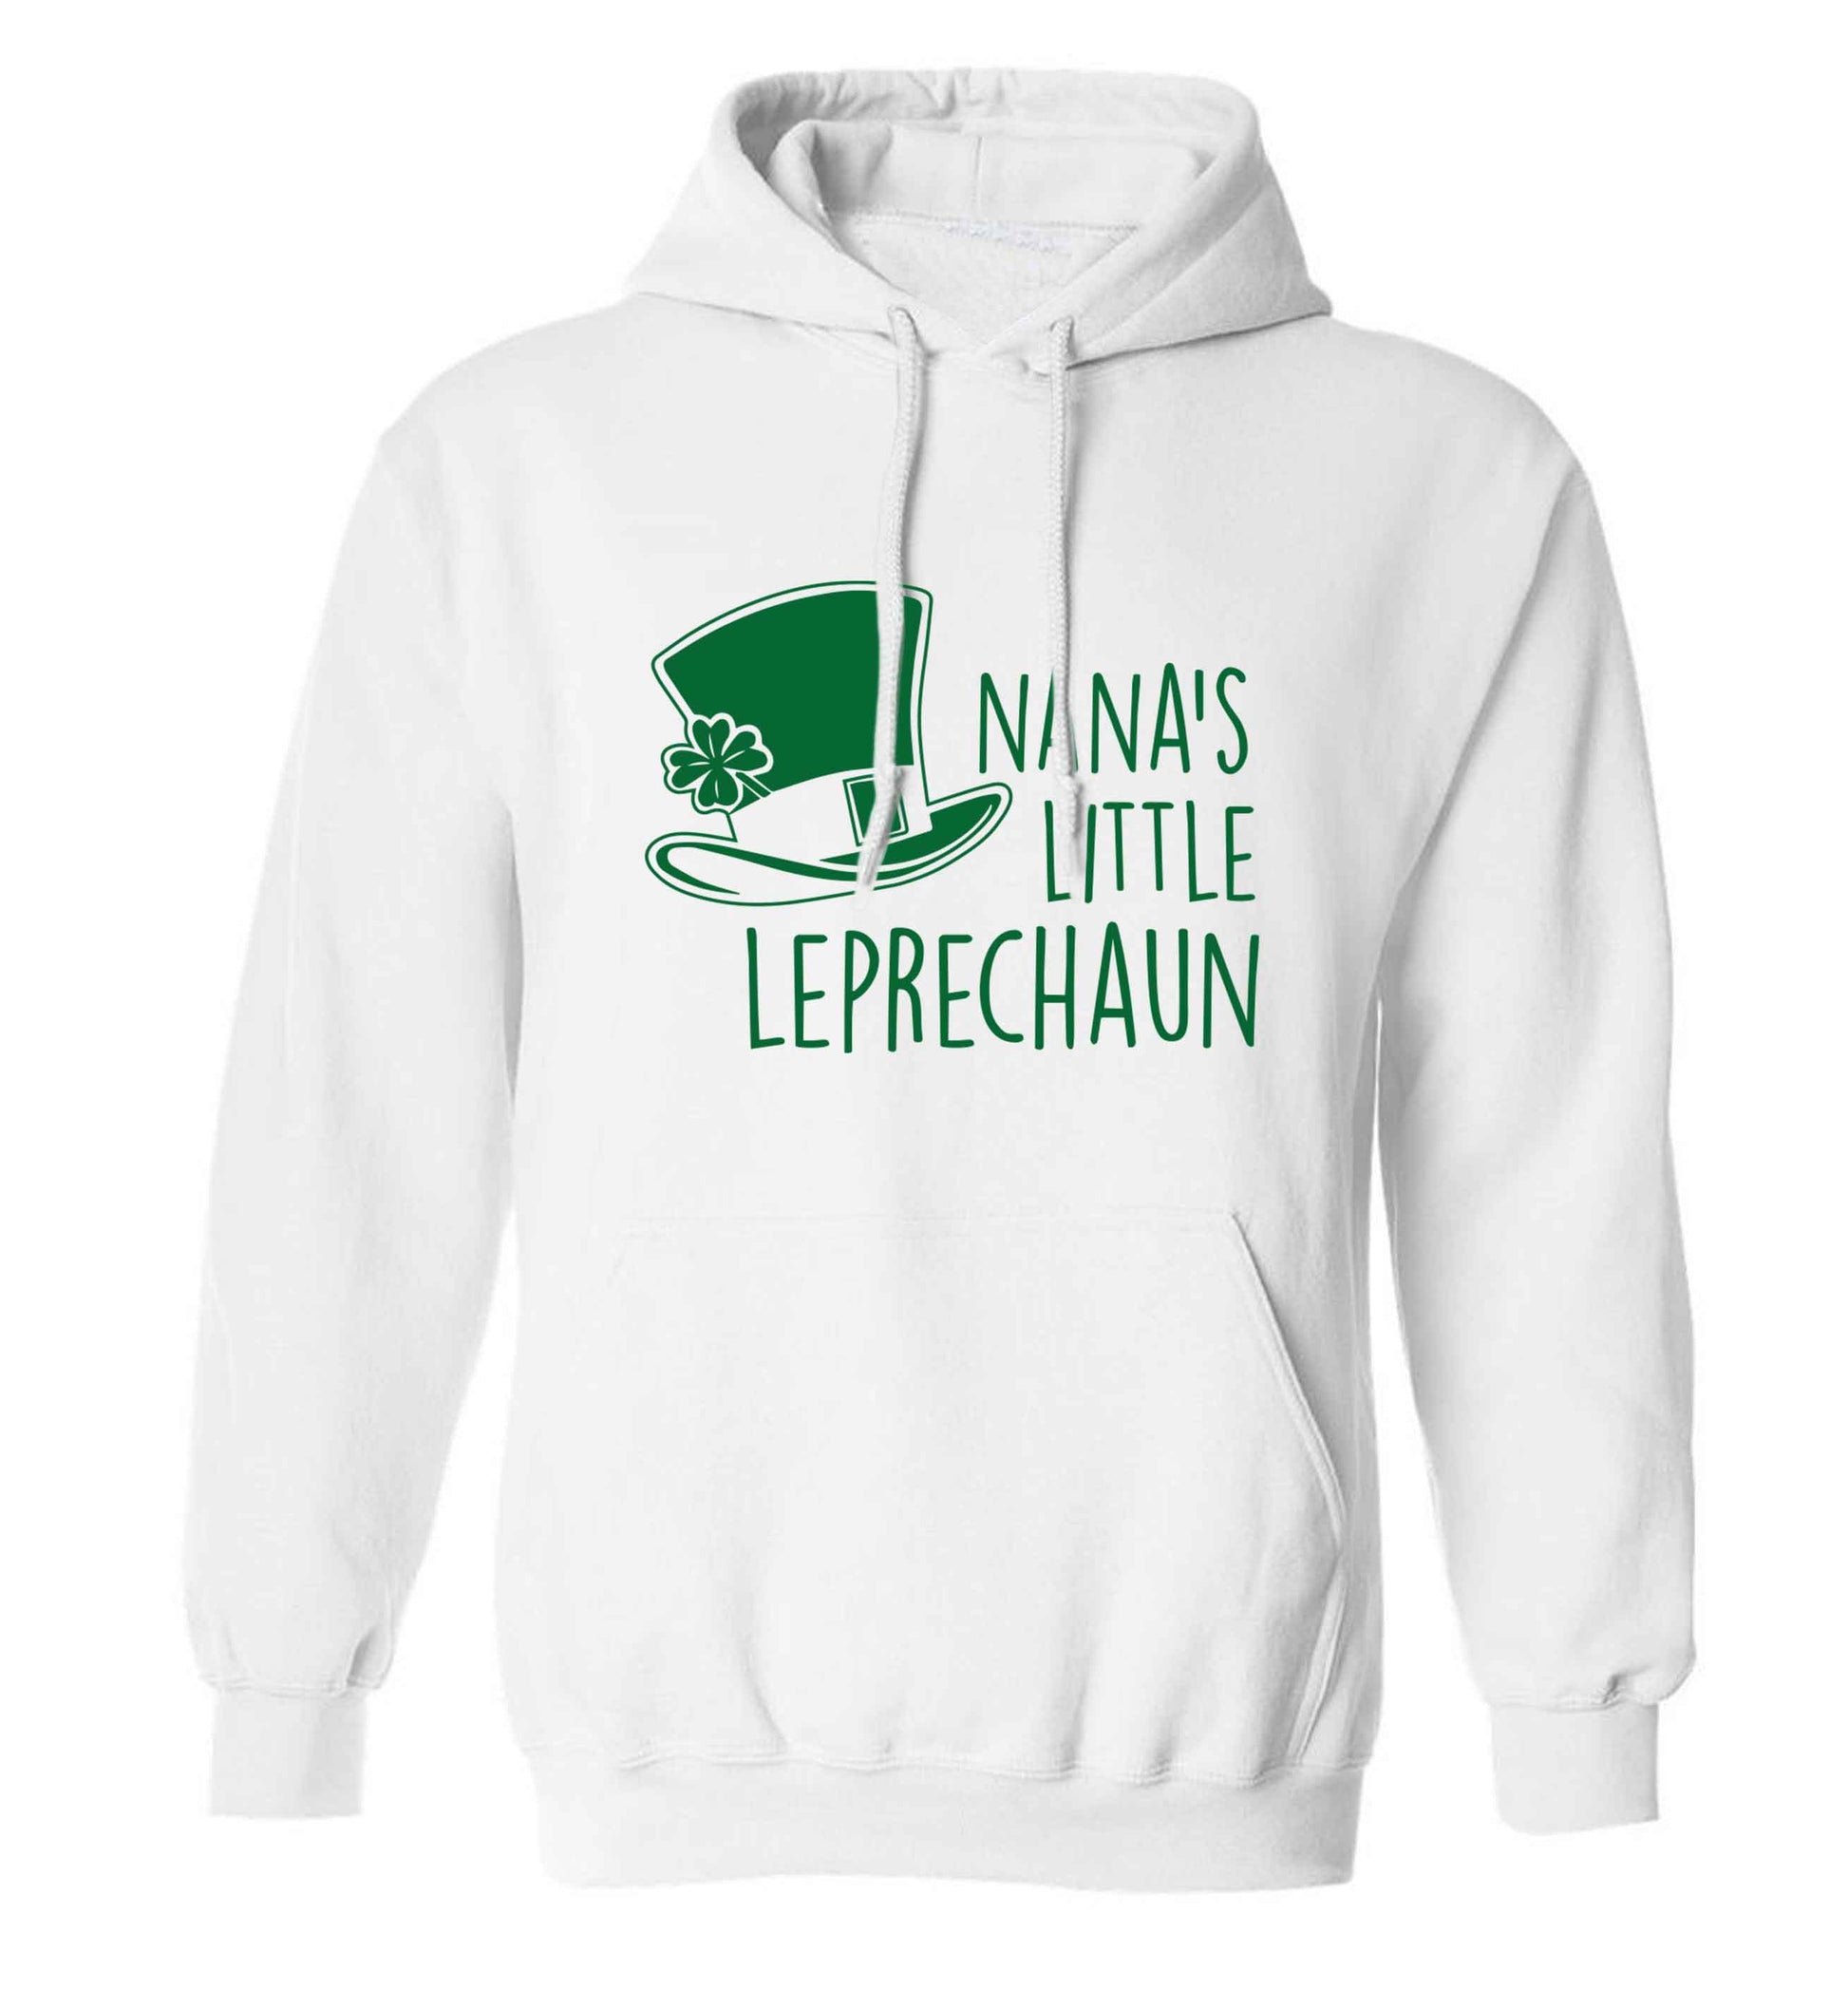 Nana's little leprechaun adults unisex white hoodie 2XL